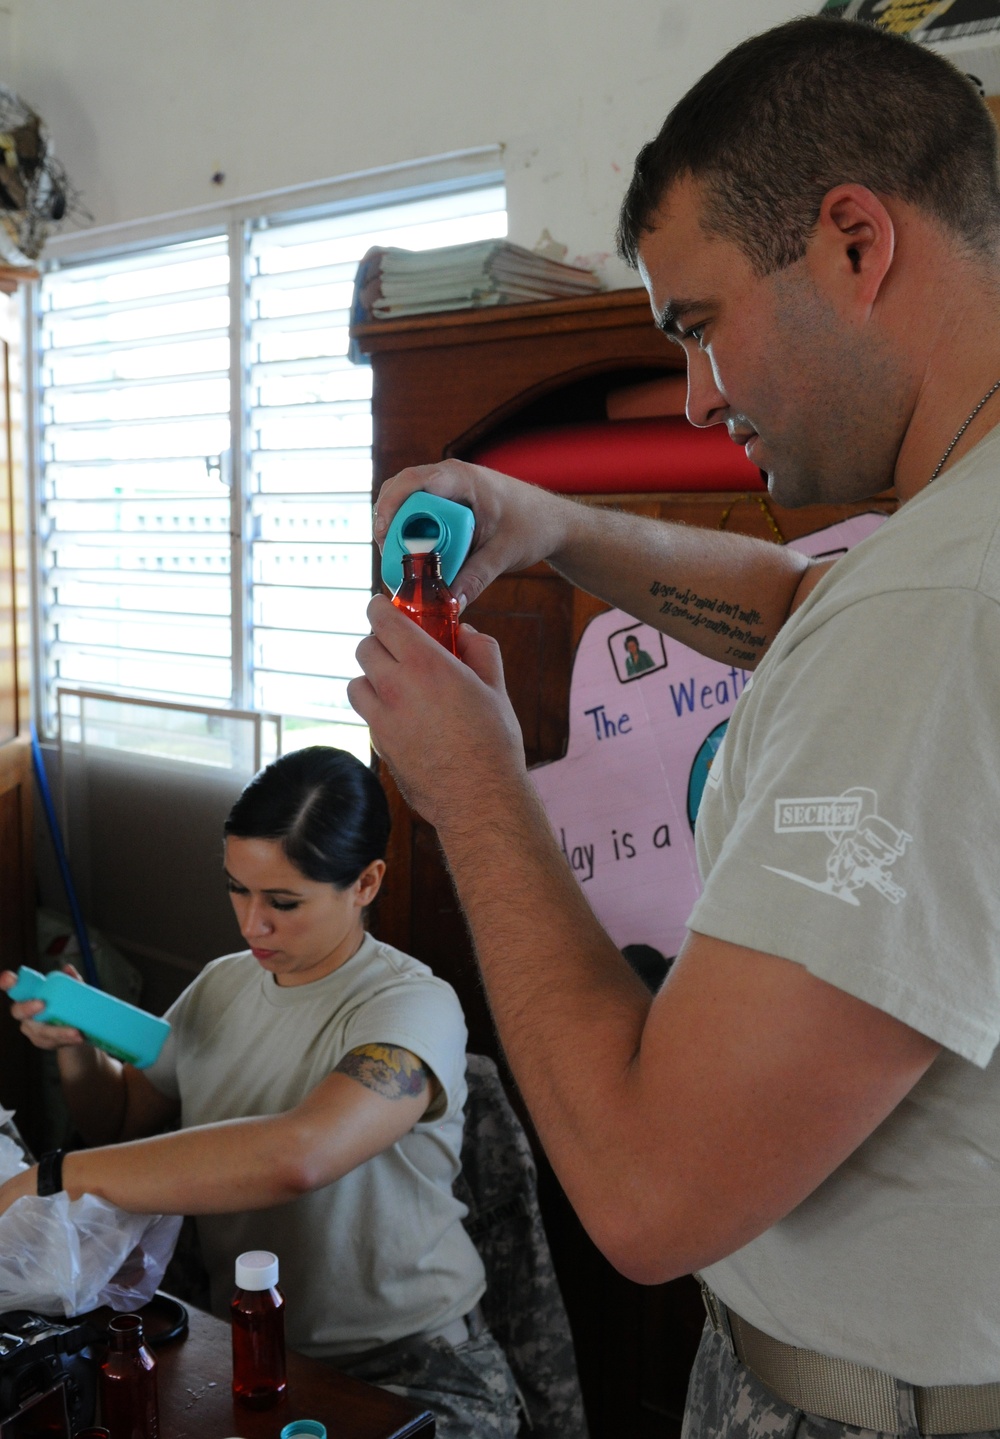 JTF-Bravo, Belize Defence Force partner to provide medical care